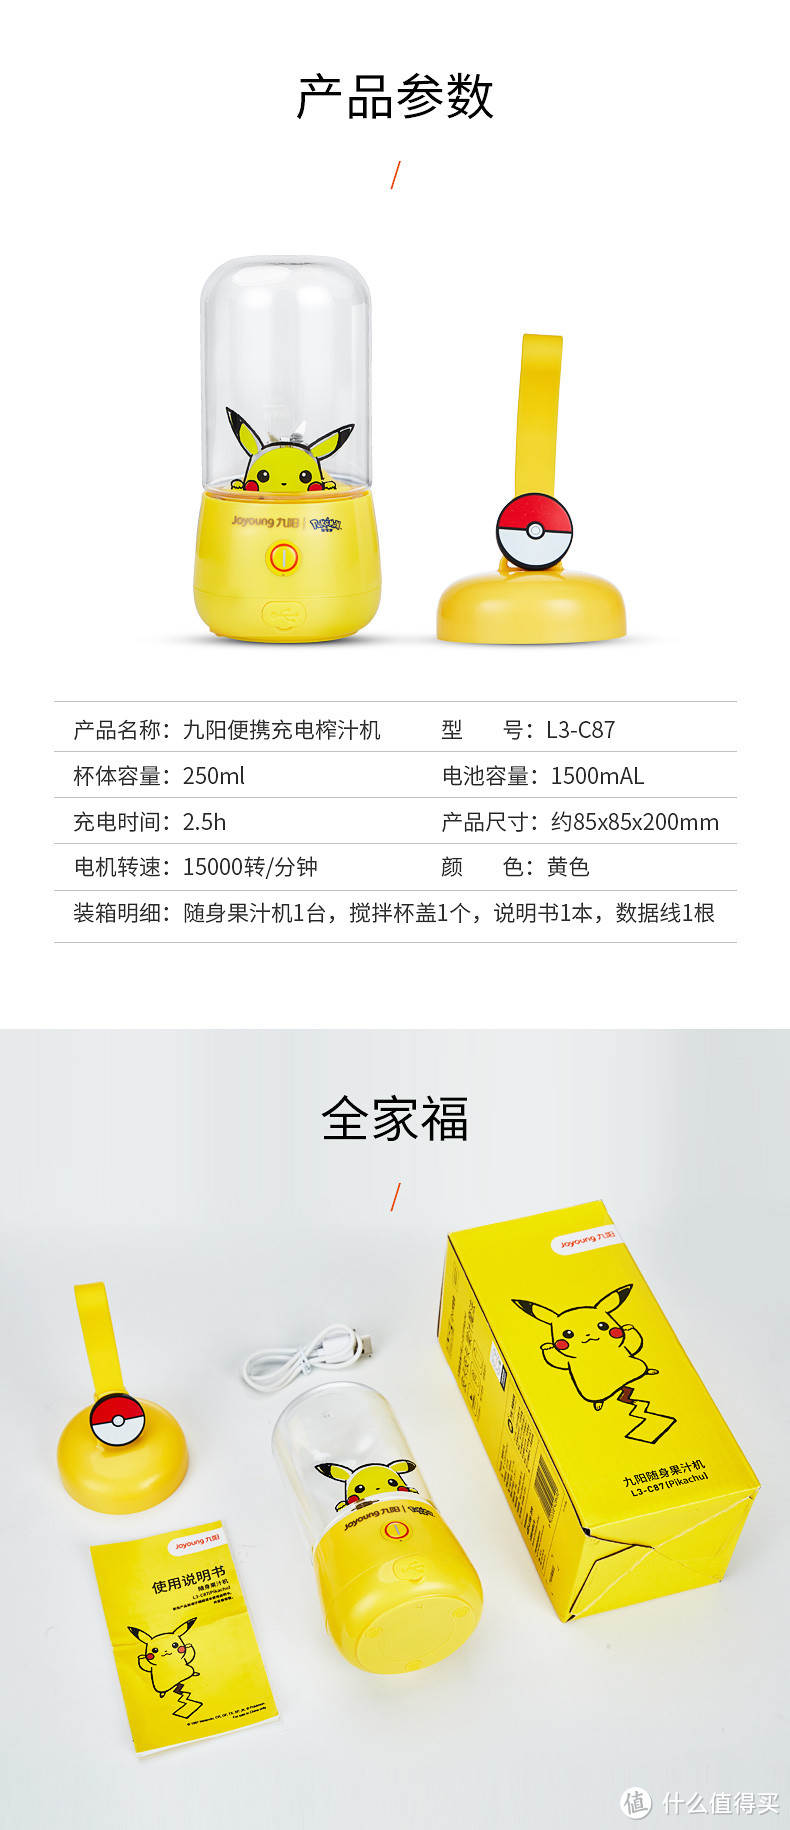 重返宝可梦：Cherry宝可梦新年款公开，九阳推出4款宝可梦联名产品